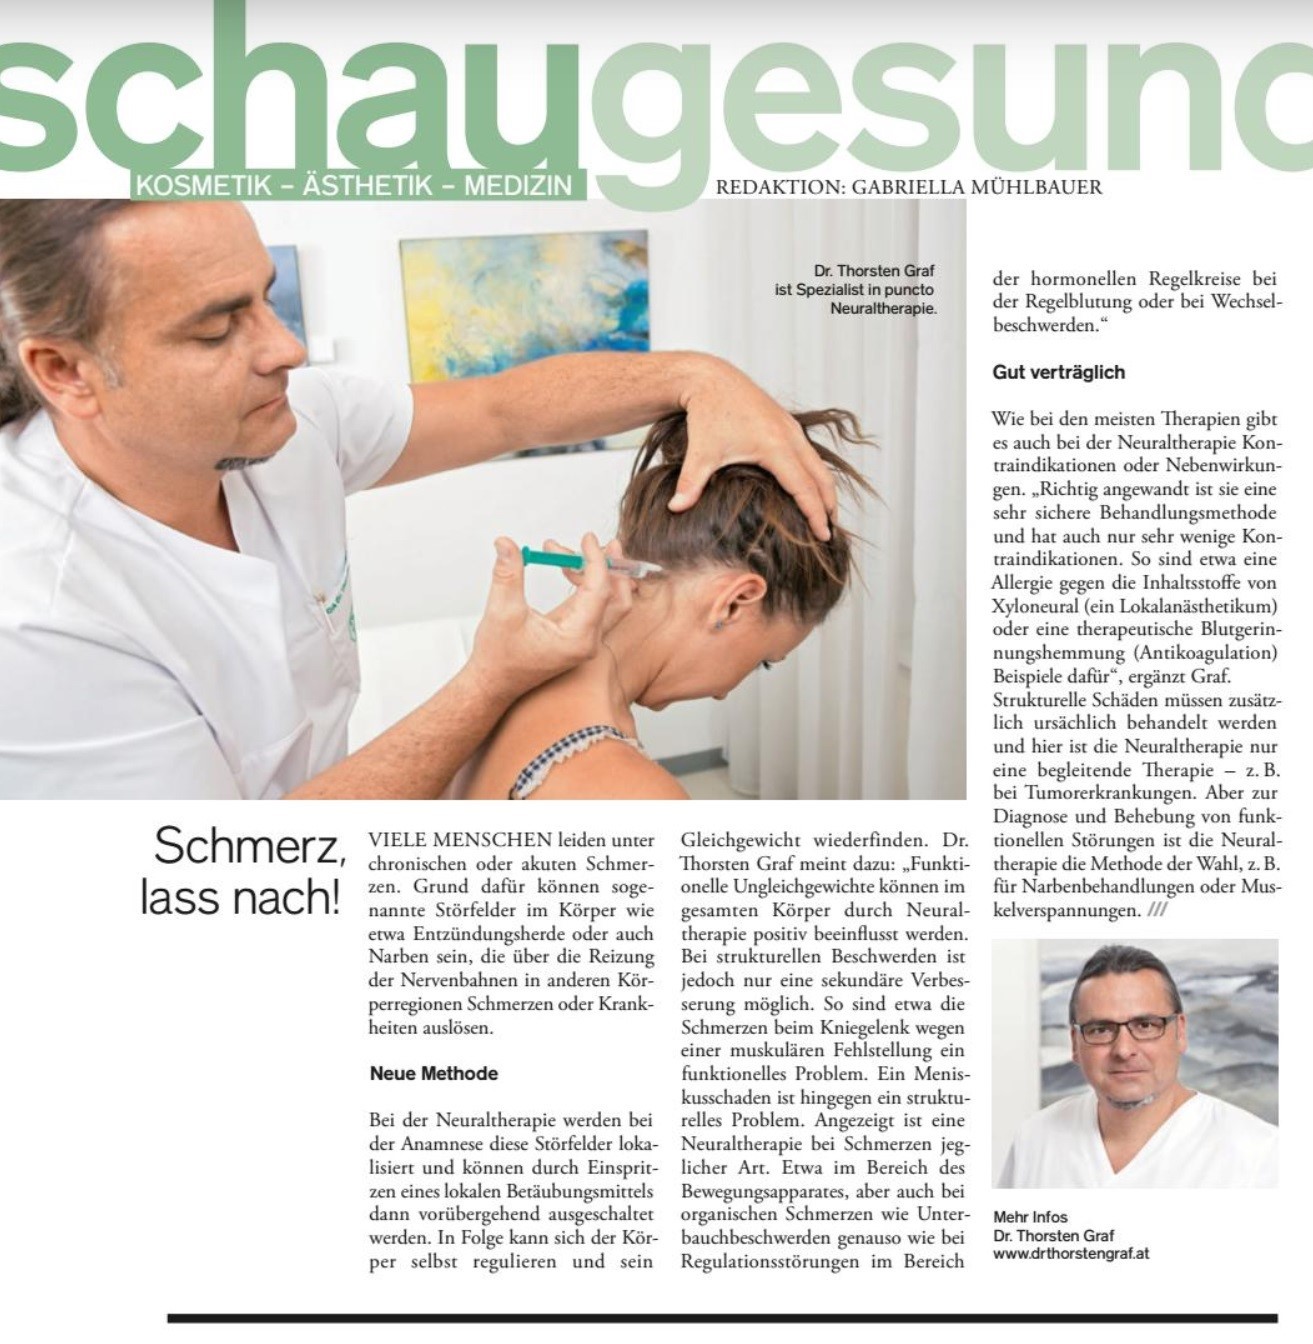 Schmerz, lass nach - Neuraltherapie - Dr. Thorsten Graf - Story im Schau-Magazin